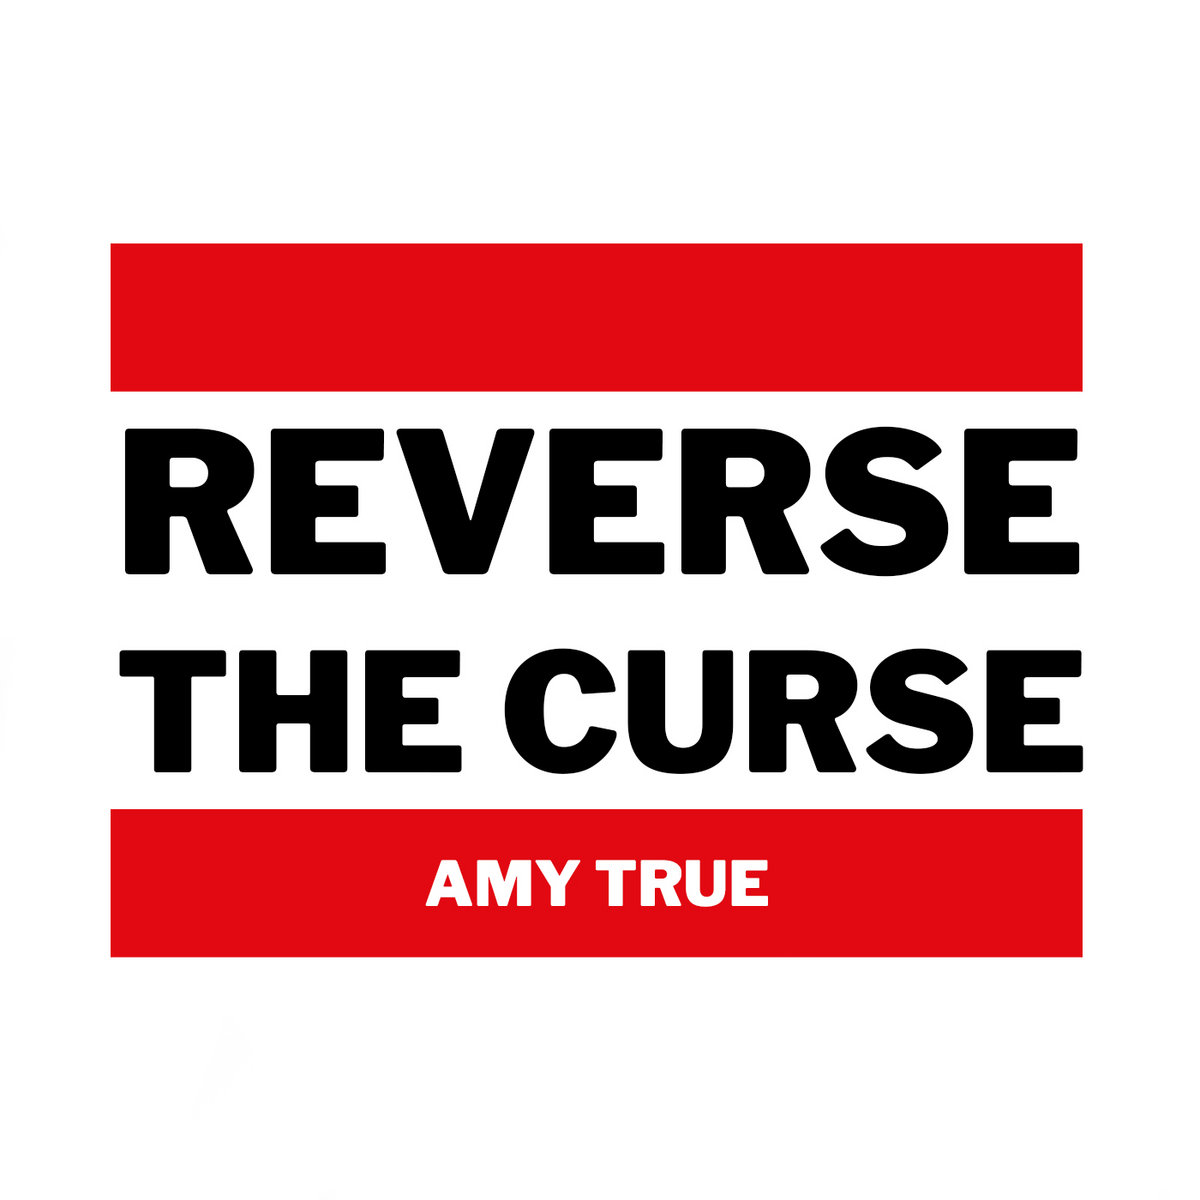 Reverse_the_curse_amy_true